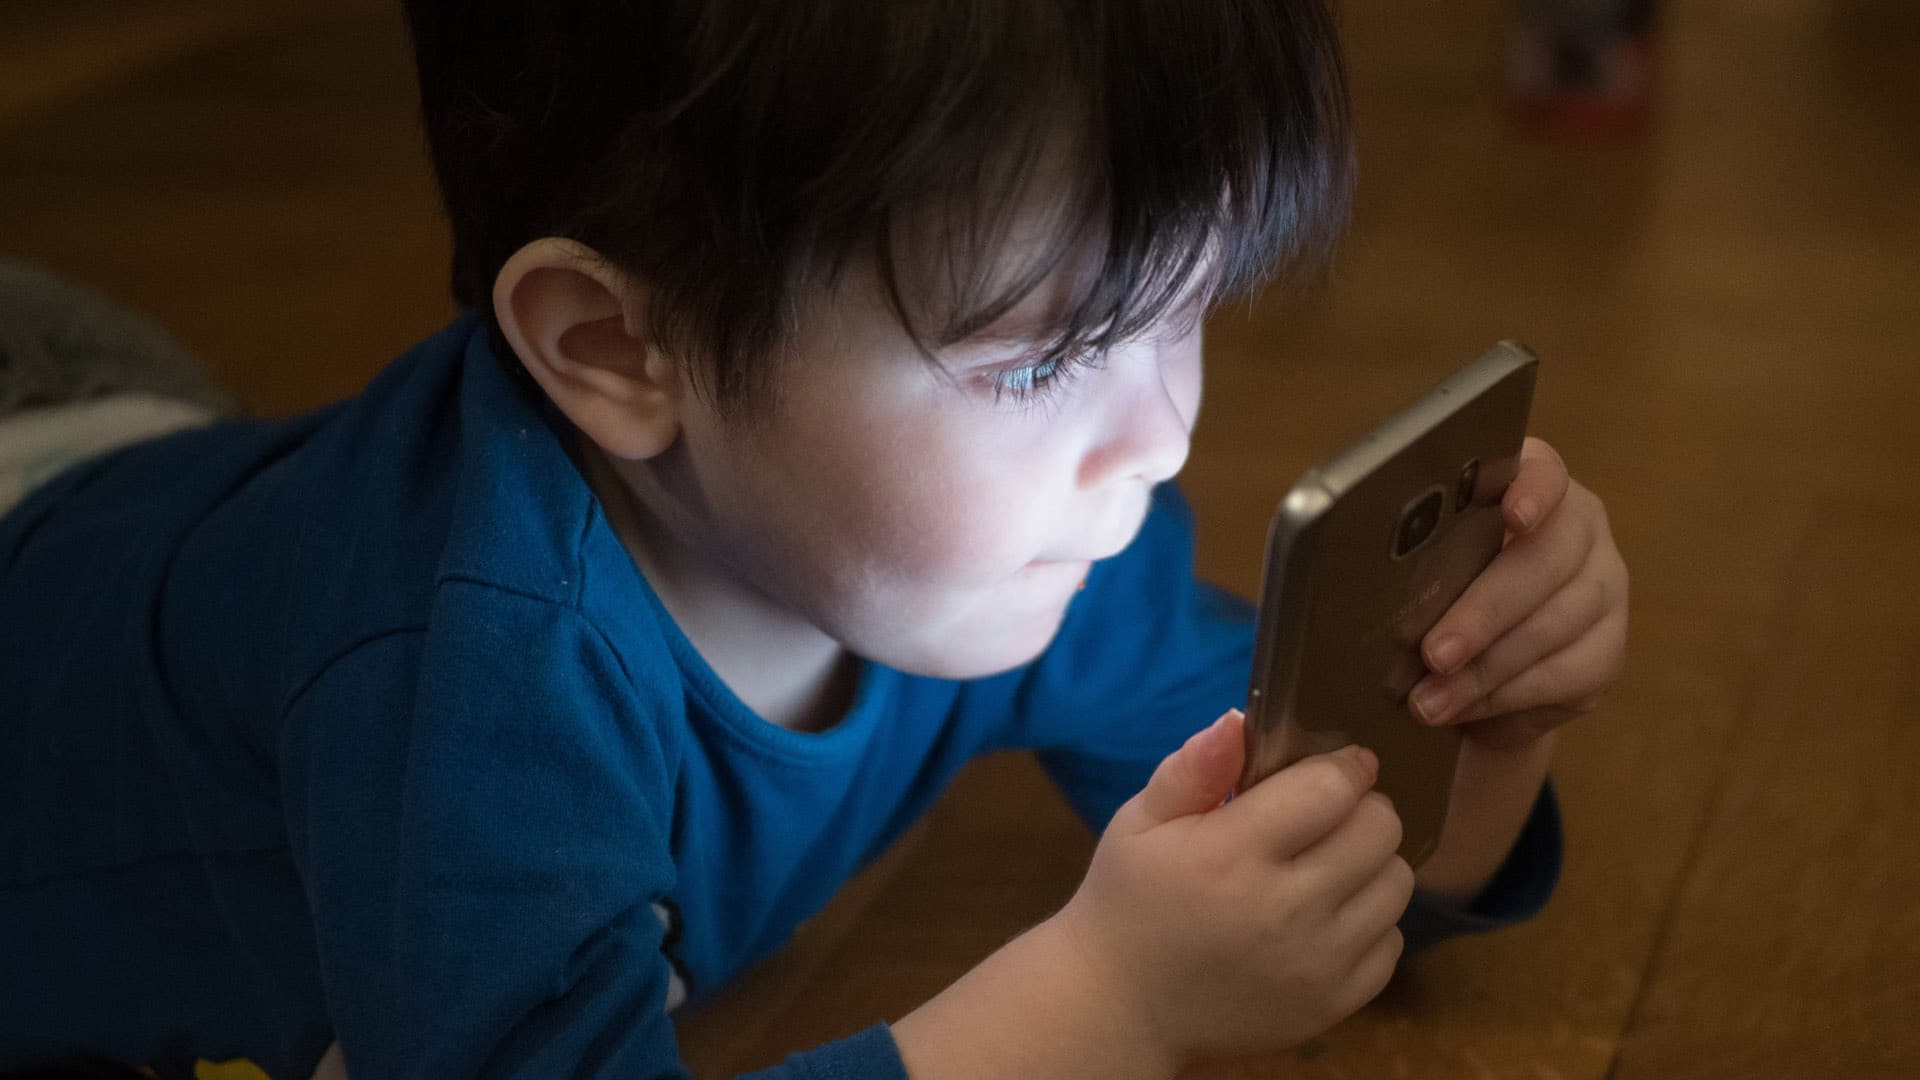 Wenn Kinder zu lange vor dem Smartphone sitzen, kann das ihre Entwicklung beeinflussen, warnen Ärzte